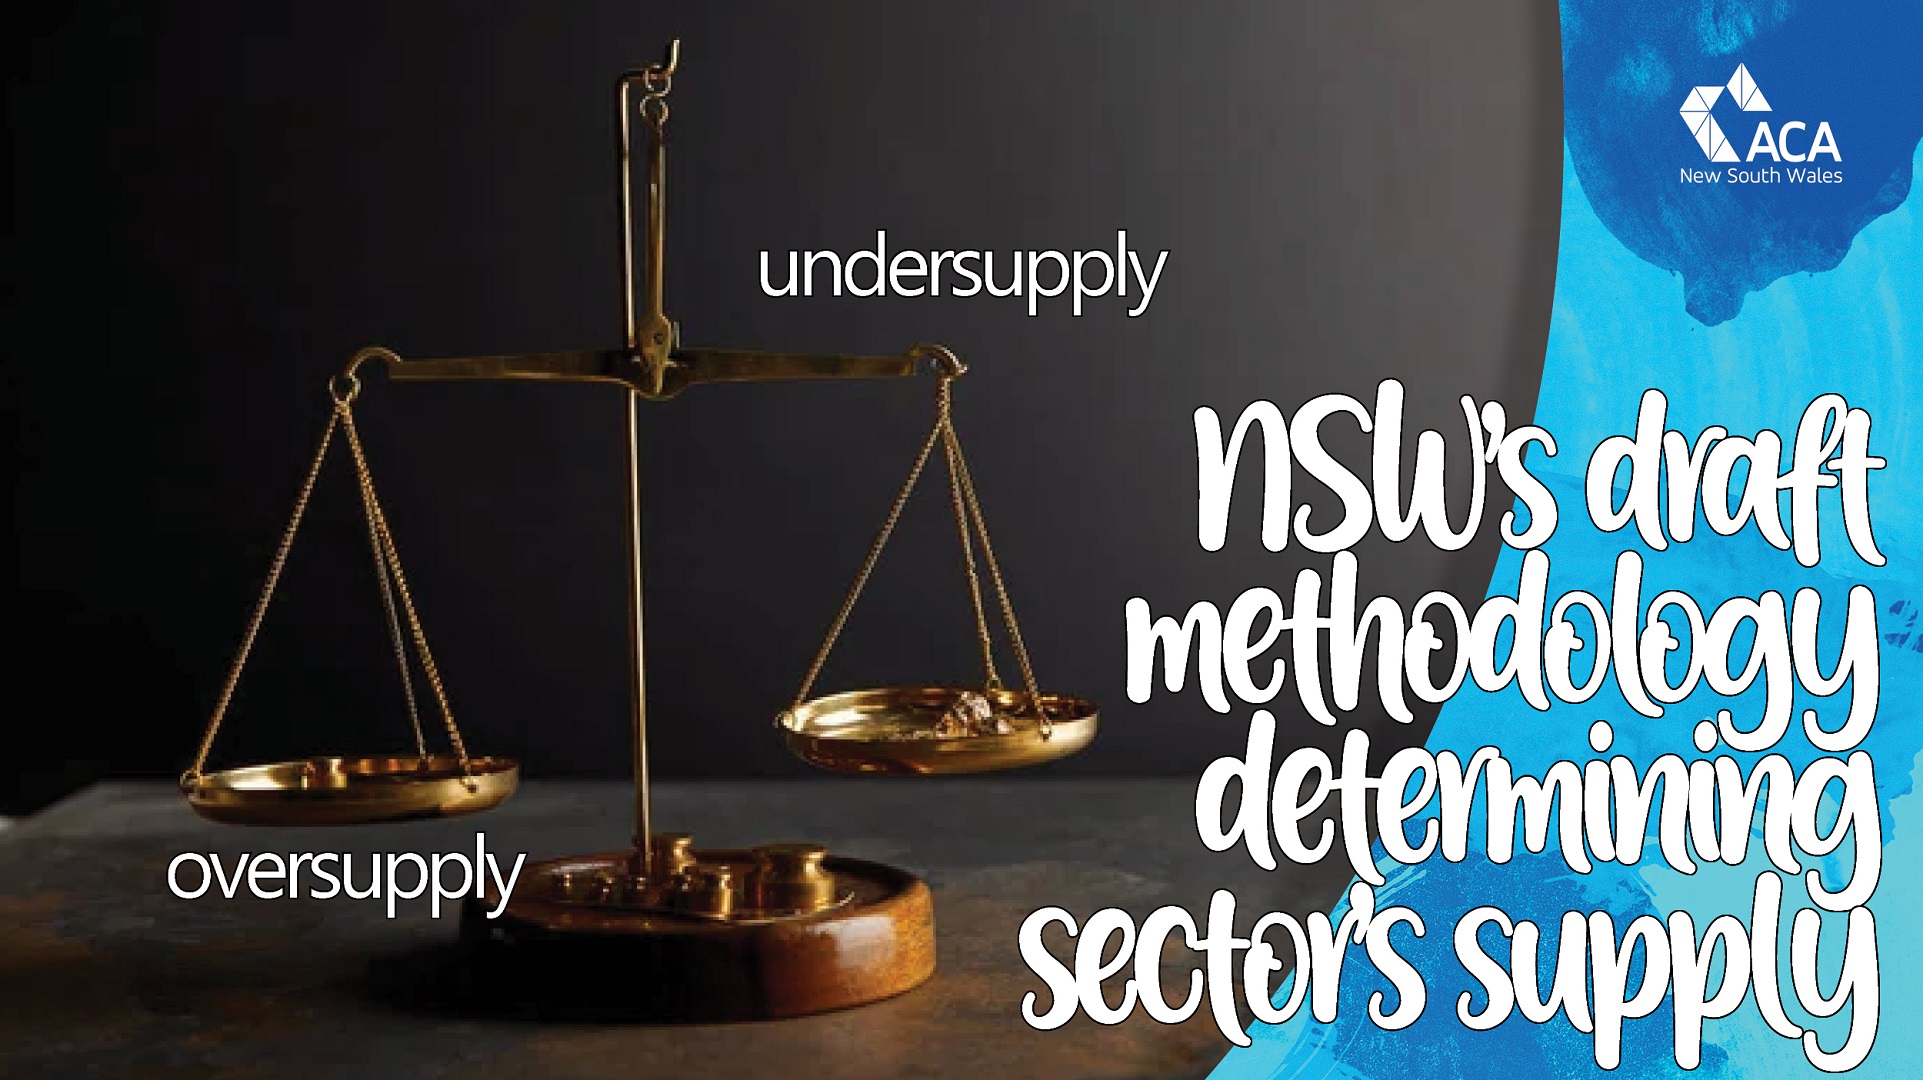 NSW's draft methodology for determining over/undersupply